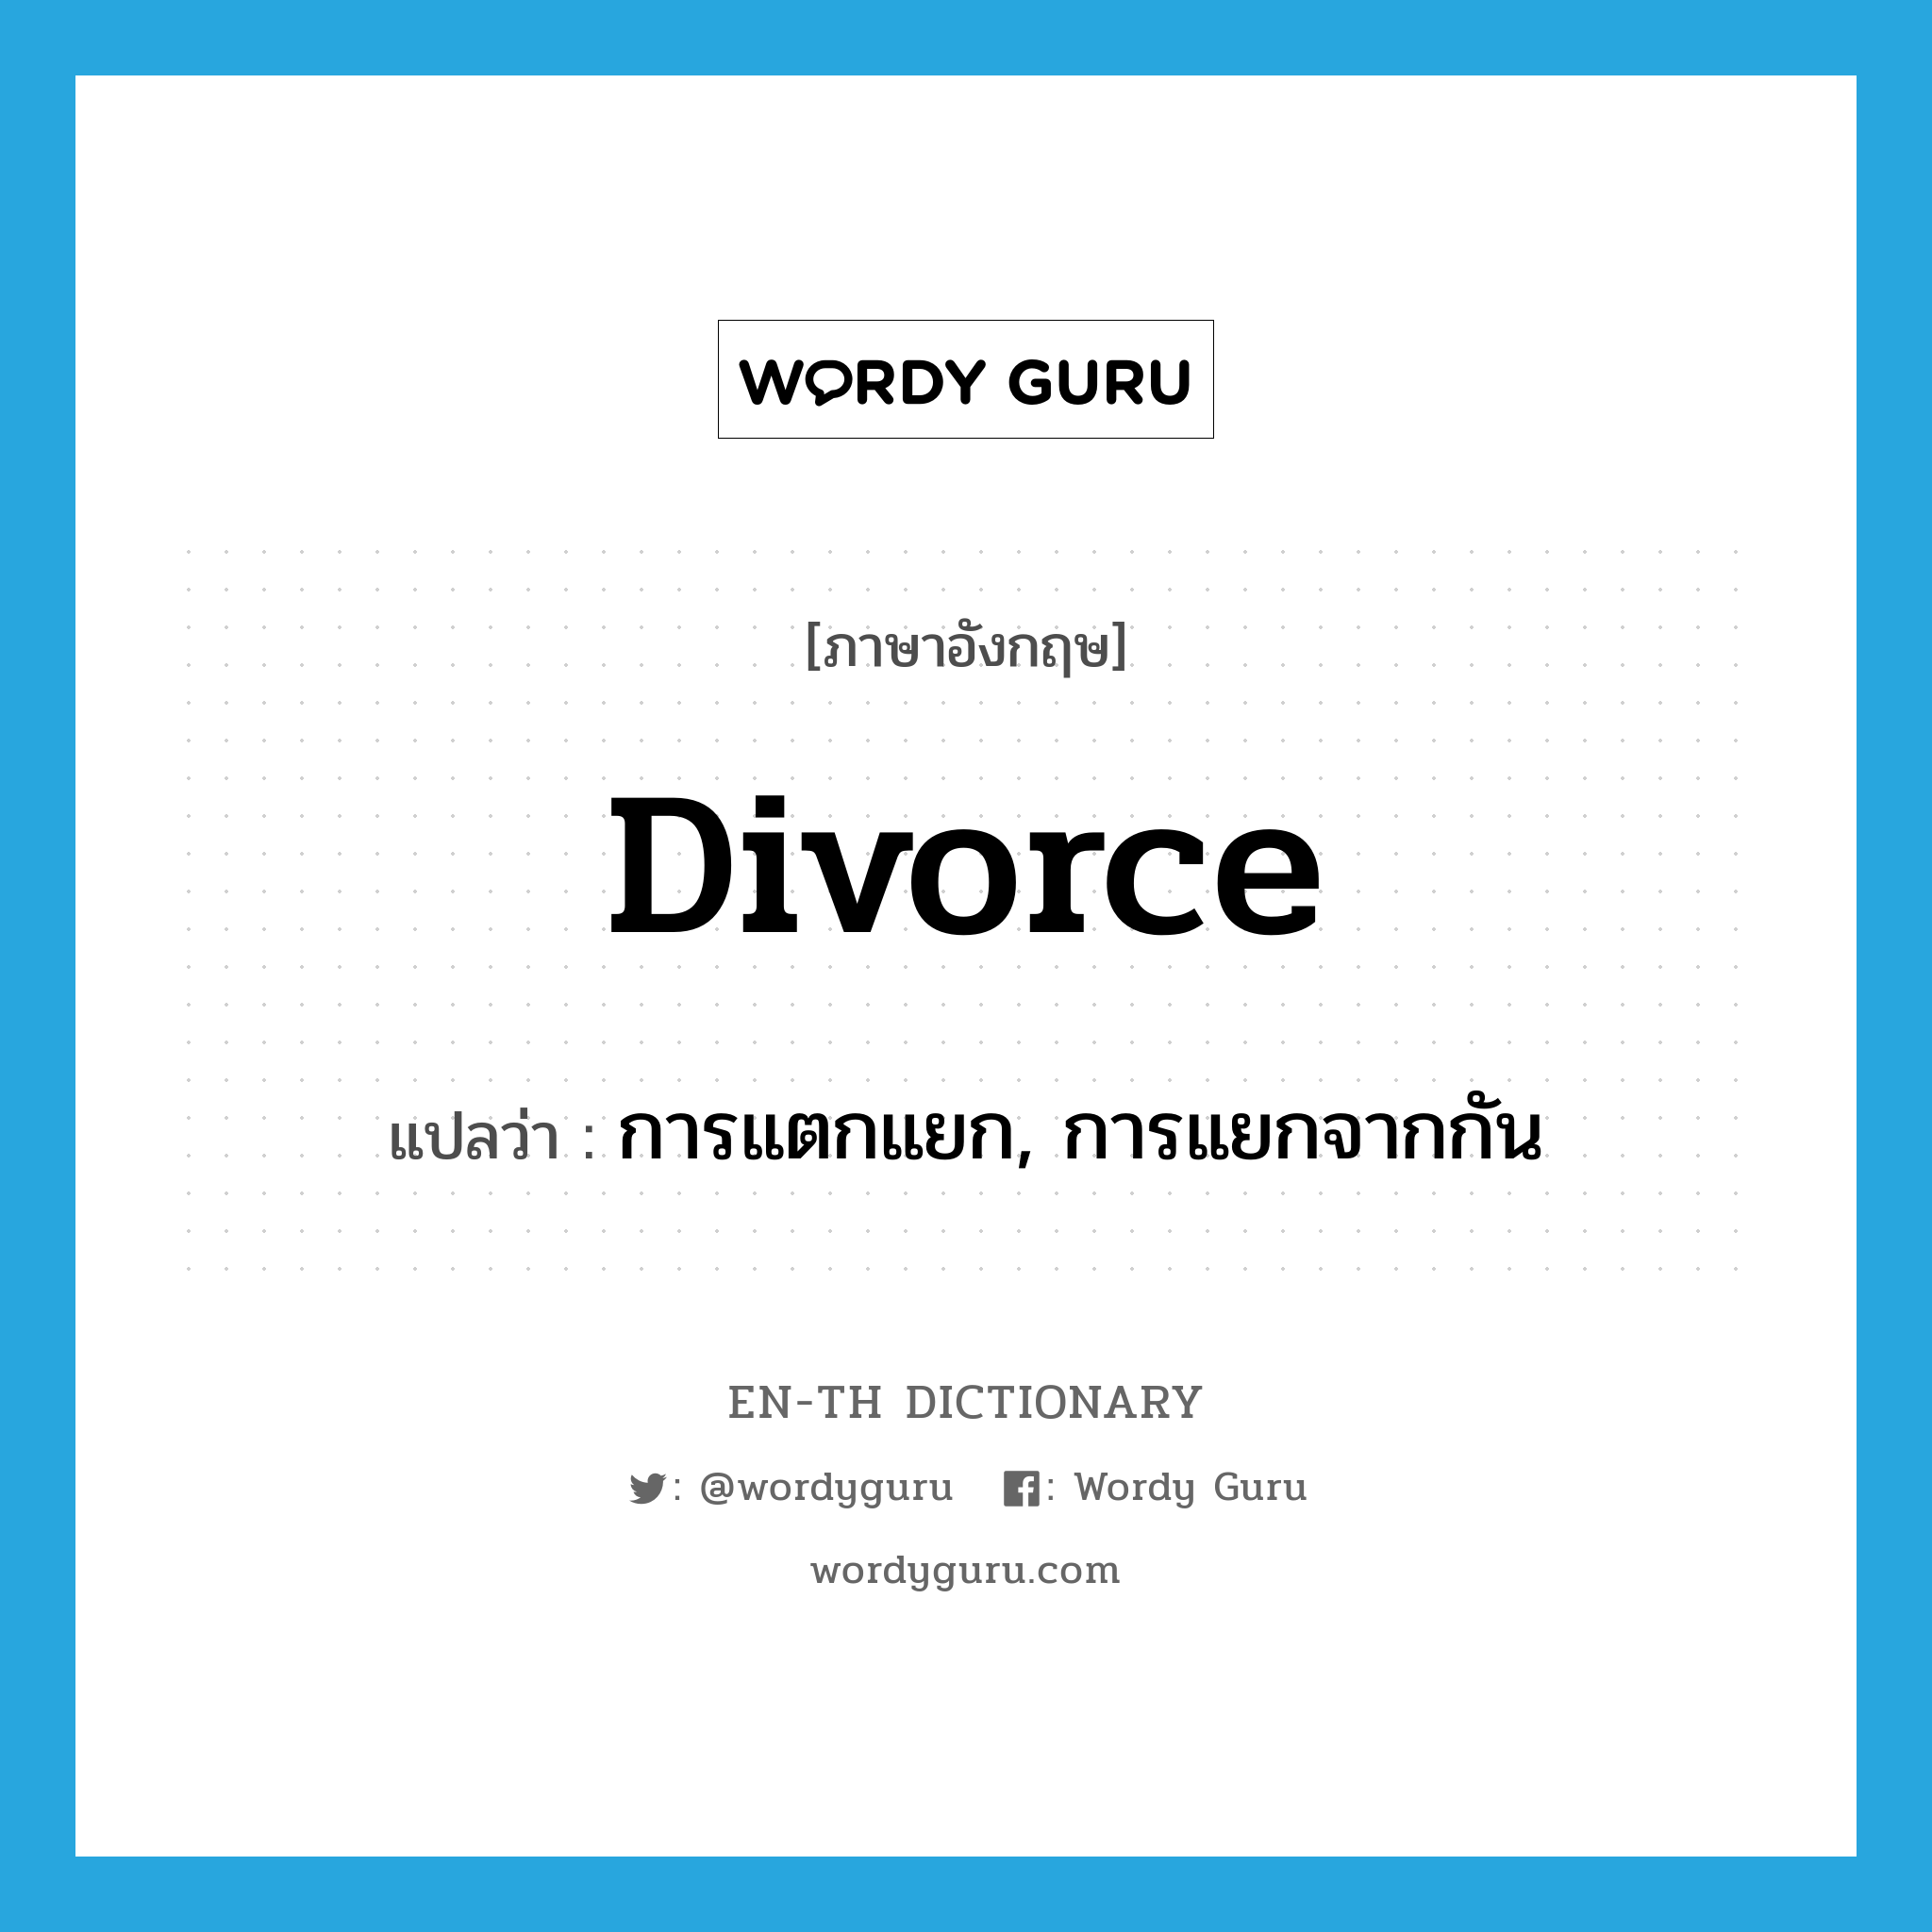 การแตกแยก, การแยกจากกัน ภาษาอังกฤษ?, คำศัพท์ภาษาอังกฤษ การแตกแยก, การแยกจากกัน แปลว่า divorce ประเภท N หมวด N